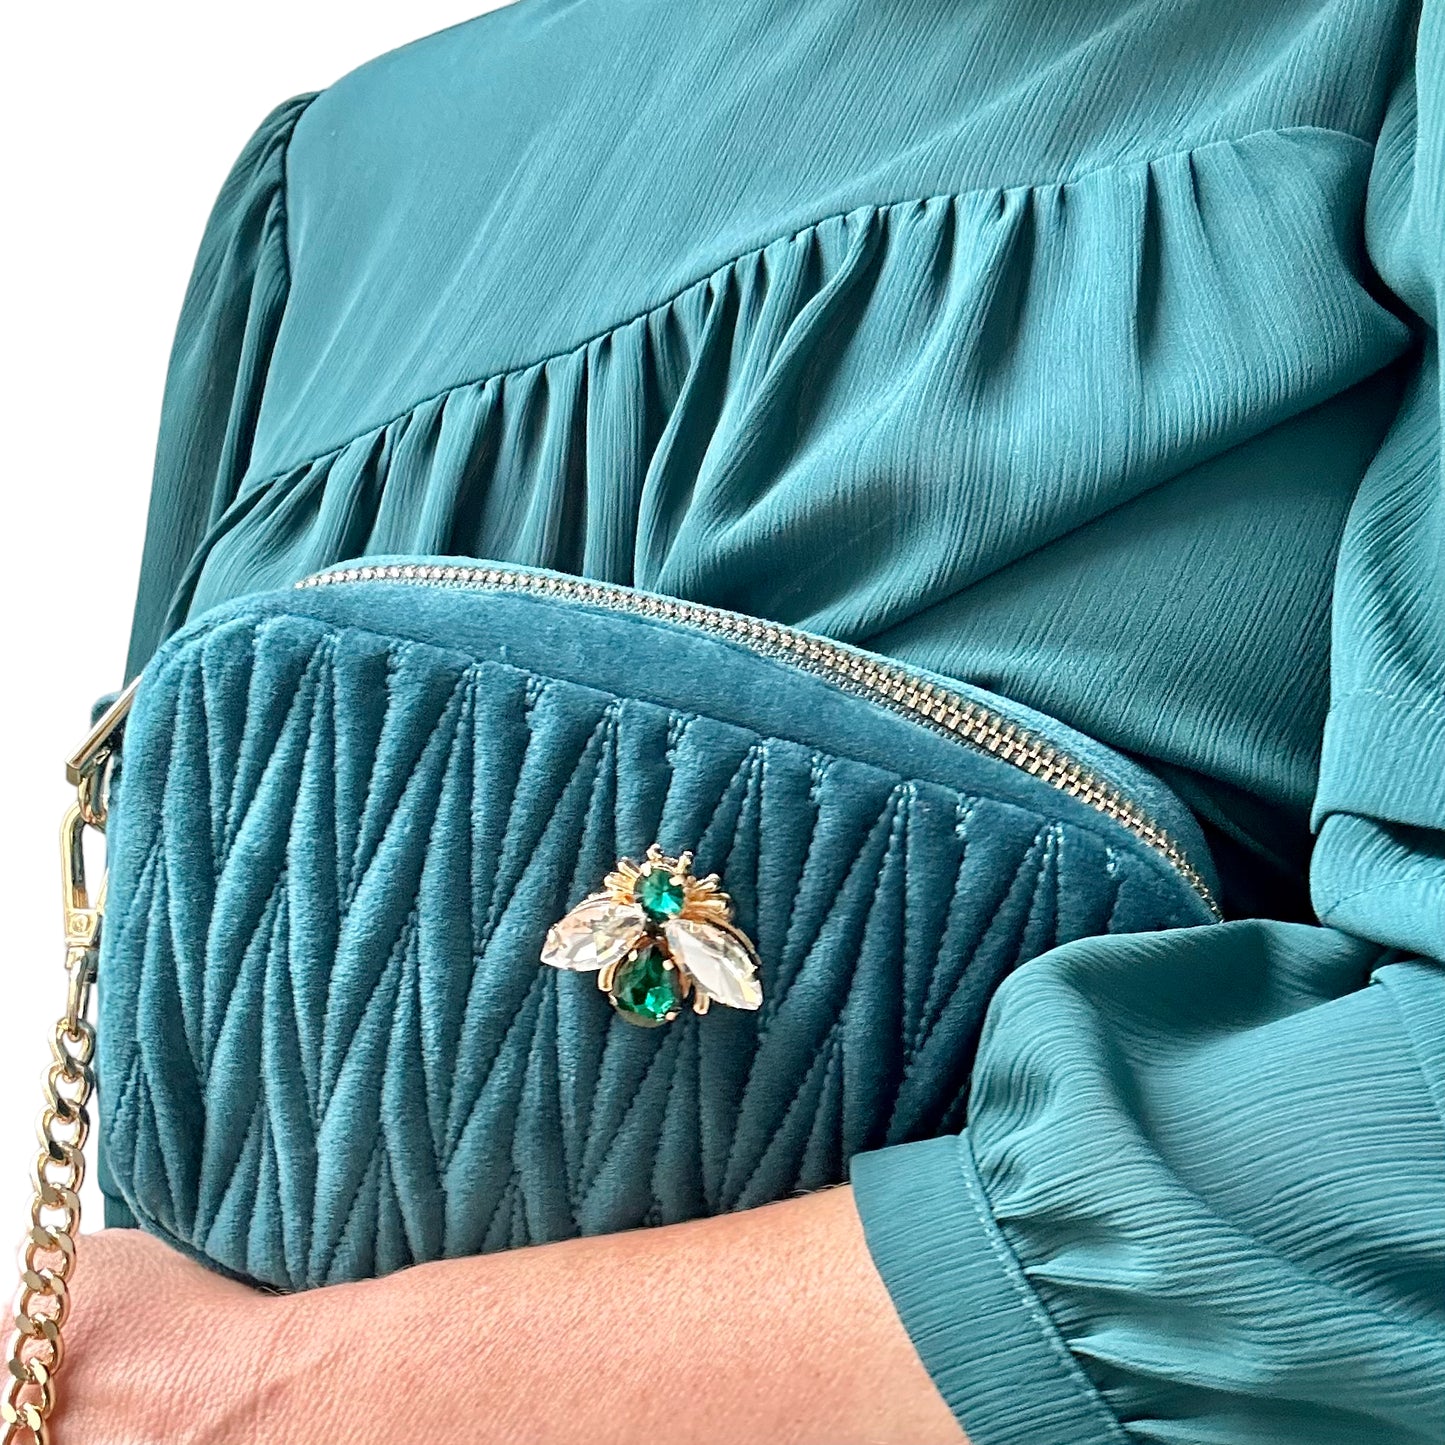 Velvet Rivington handbag in teal, recycled velvet